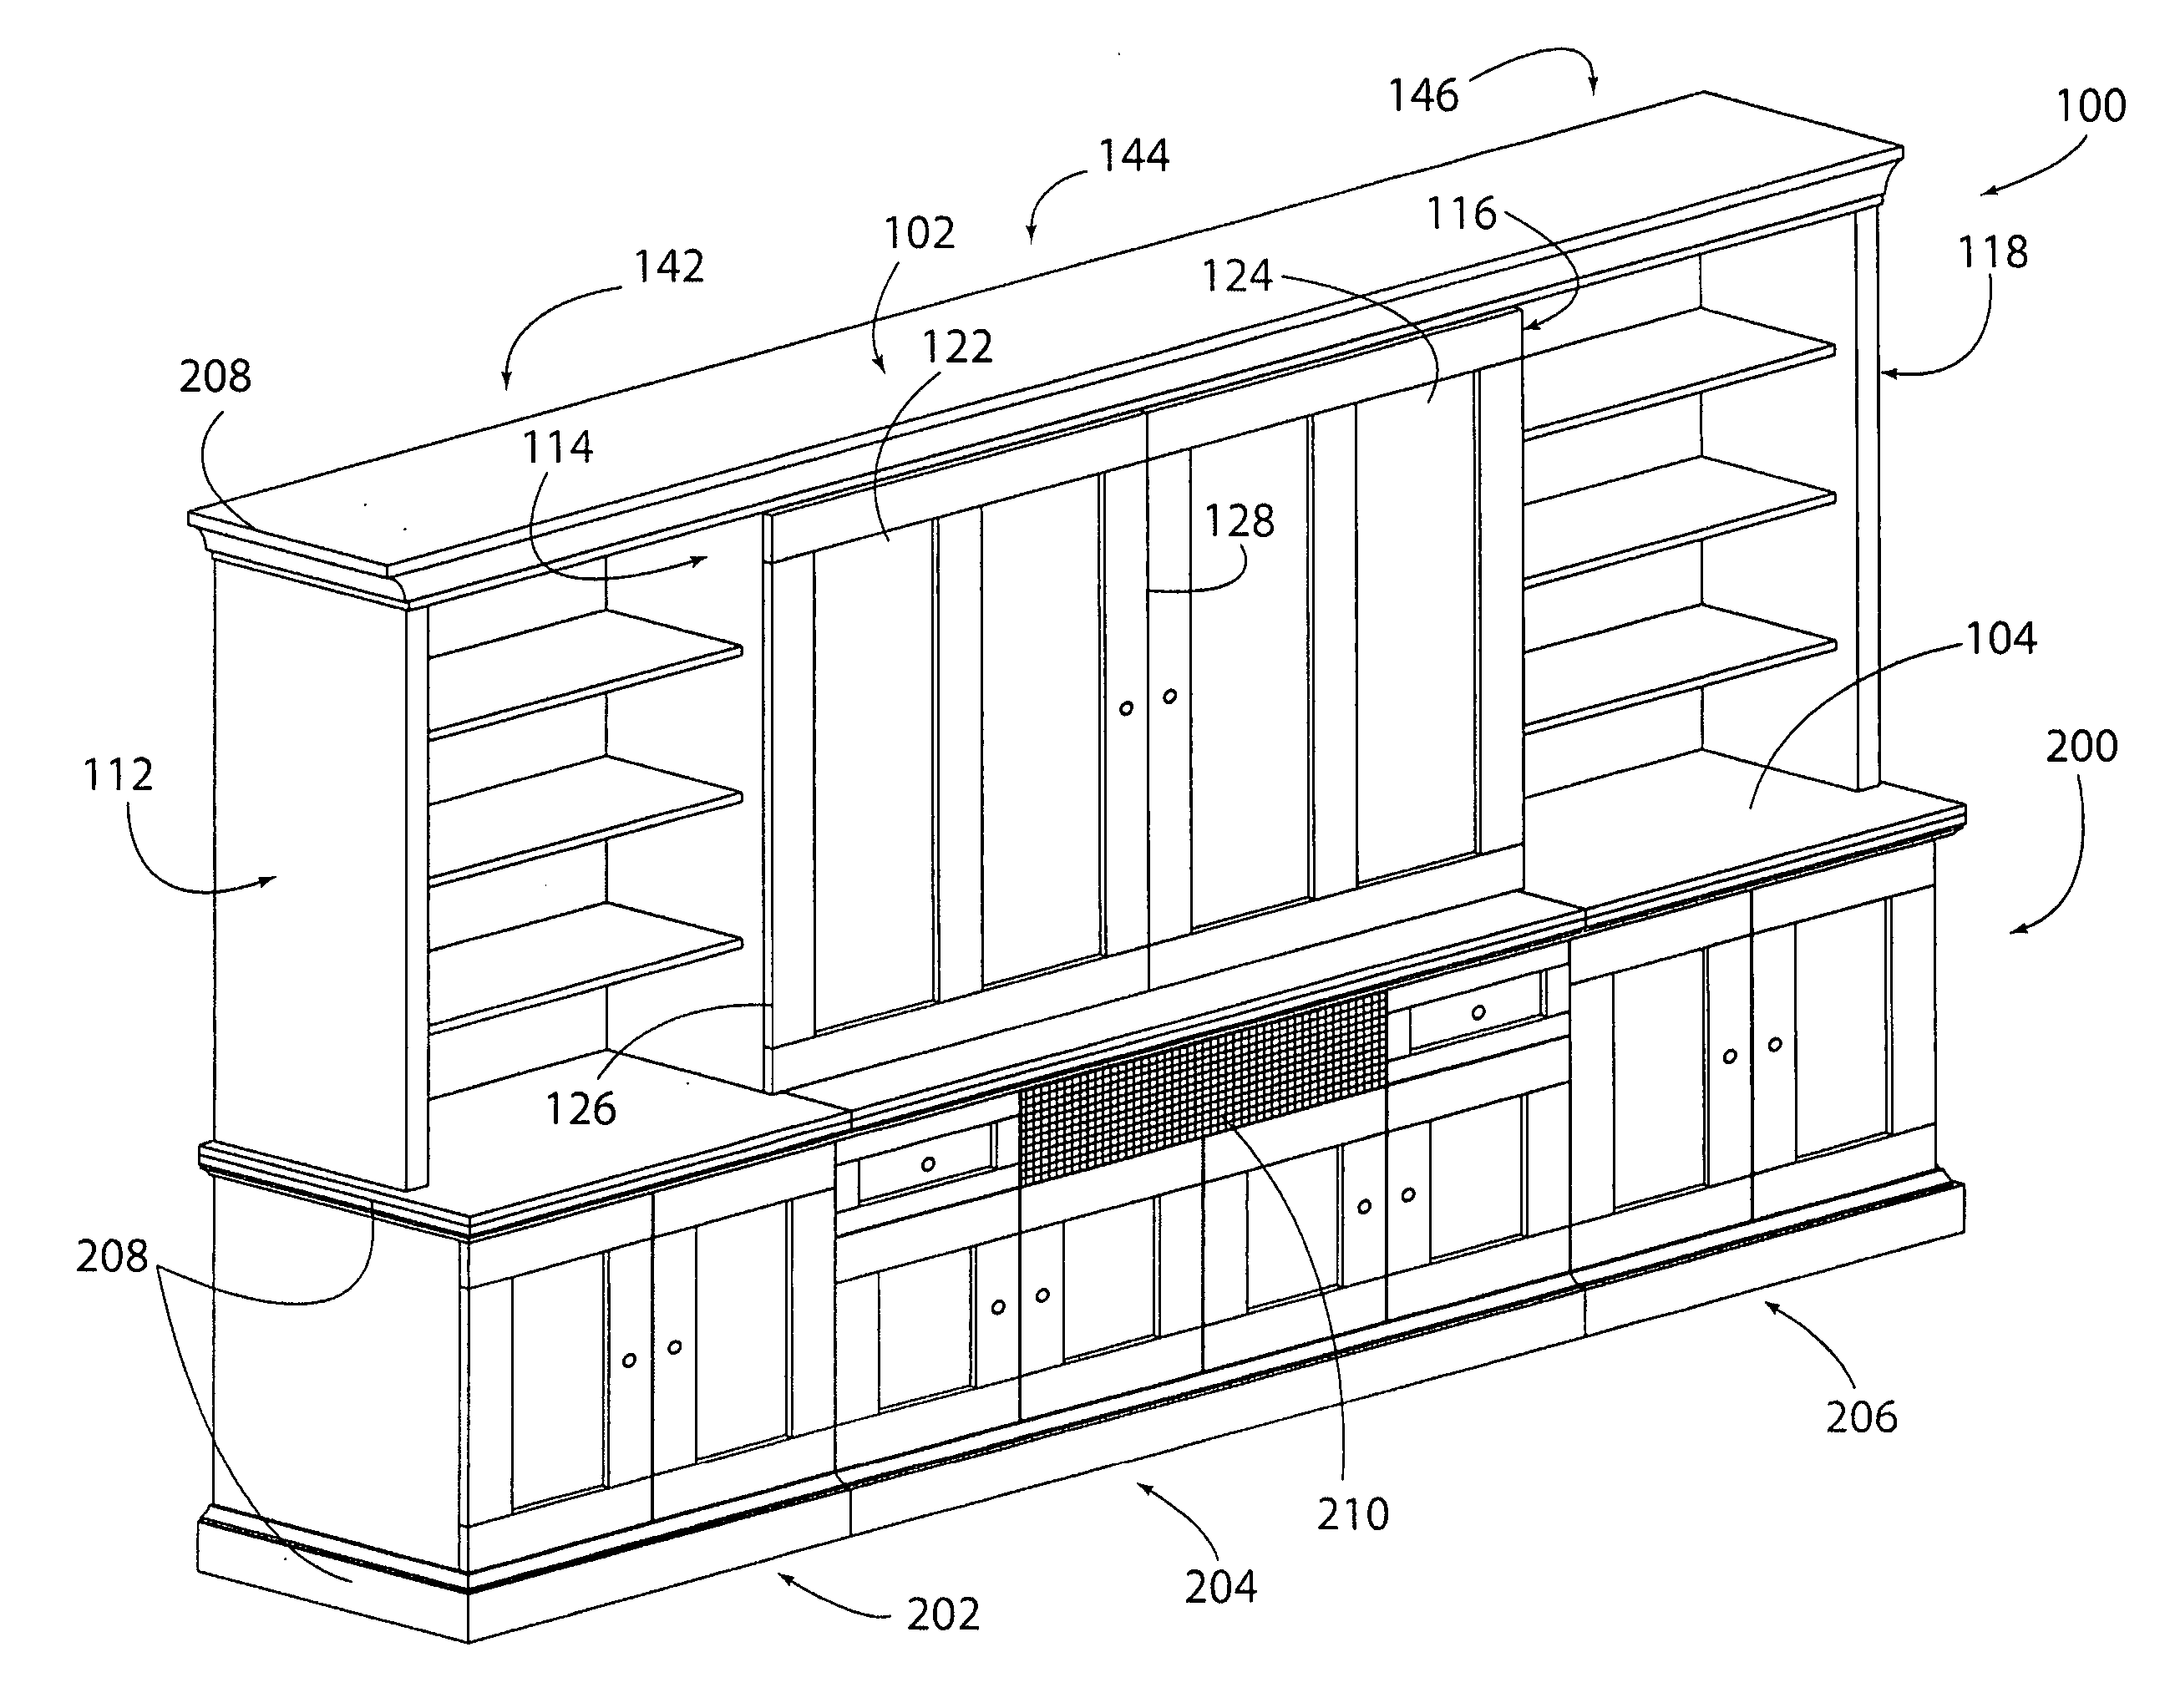 Display cabinet with modular slide door